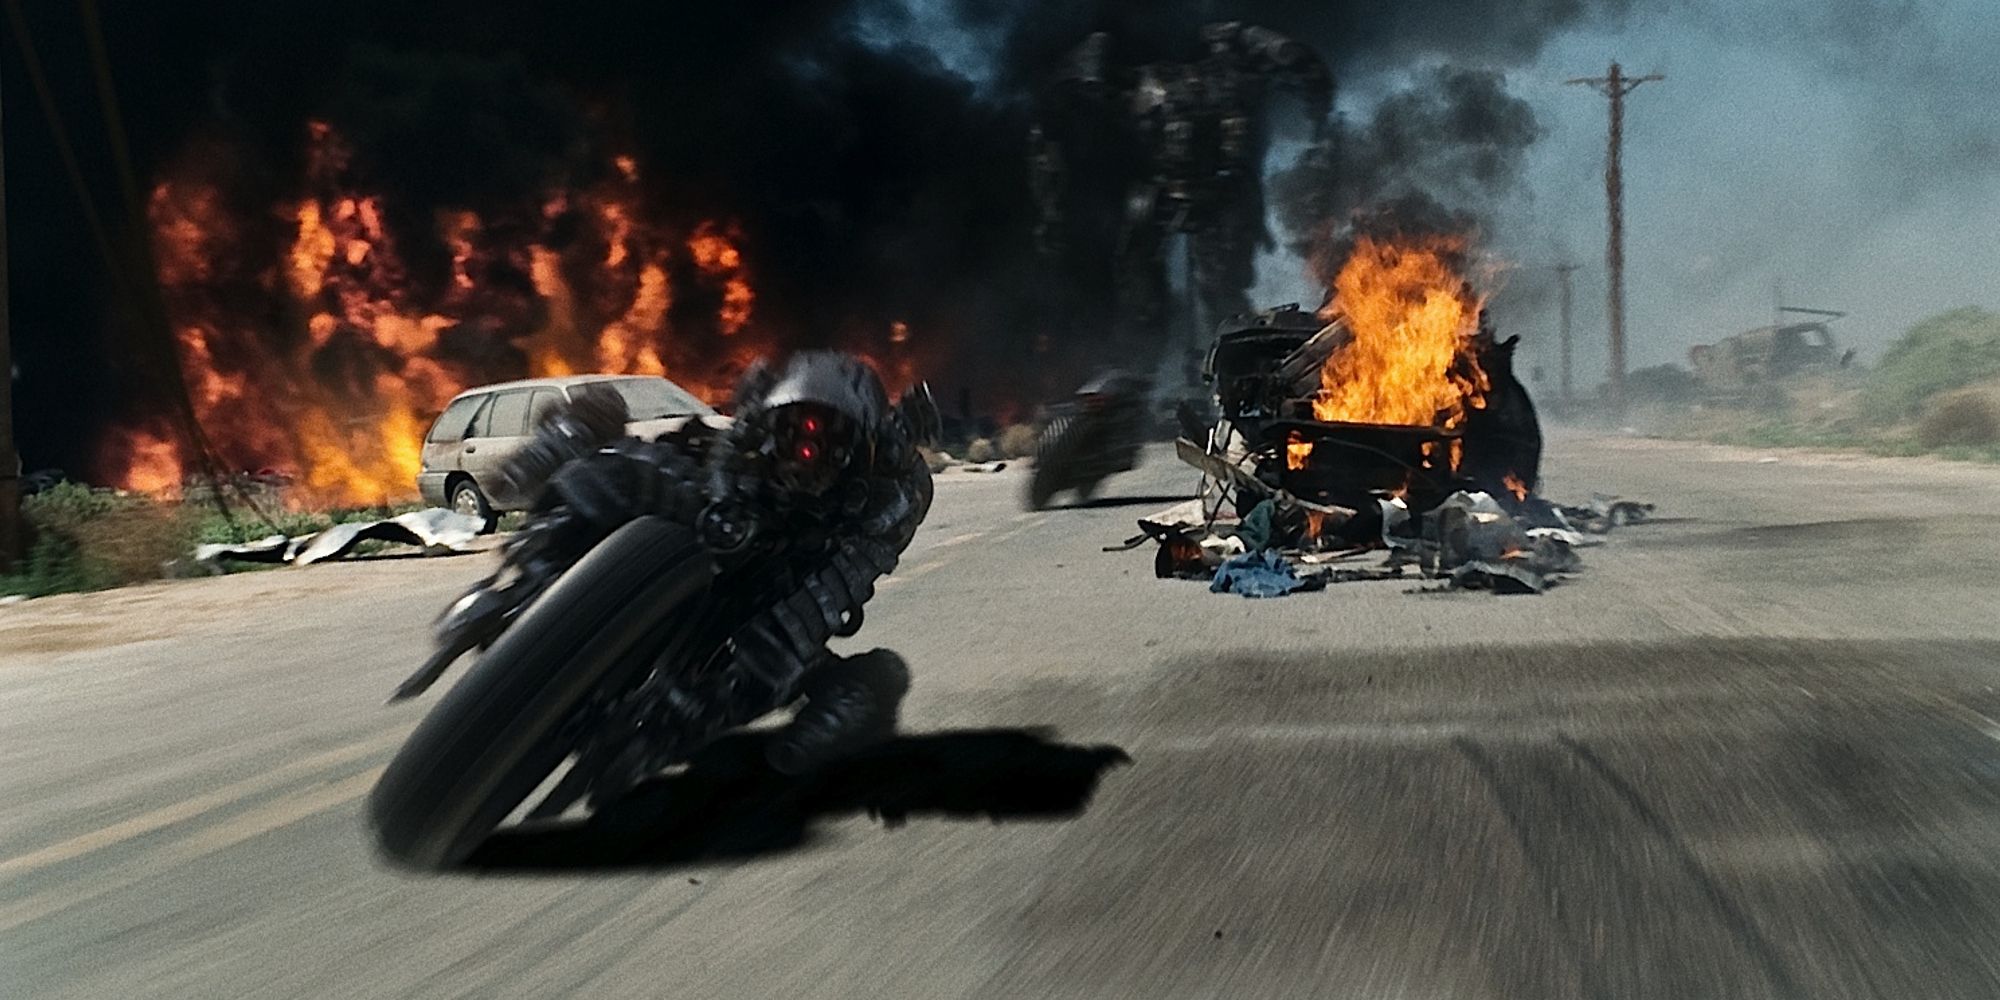 Moto-Terminators pursuing Kyle and Marcus in Terminator Salvation